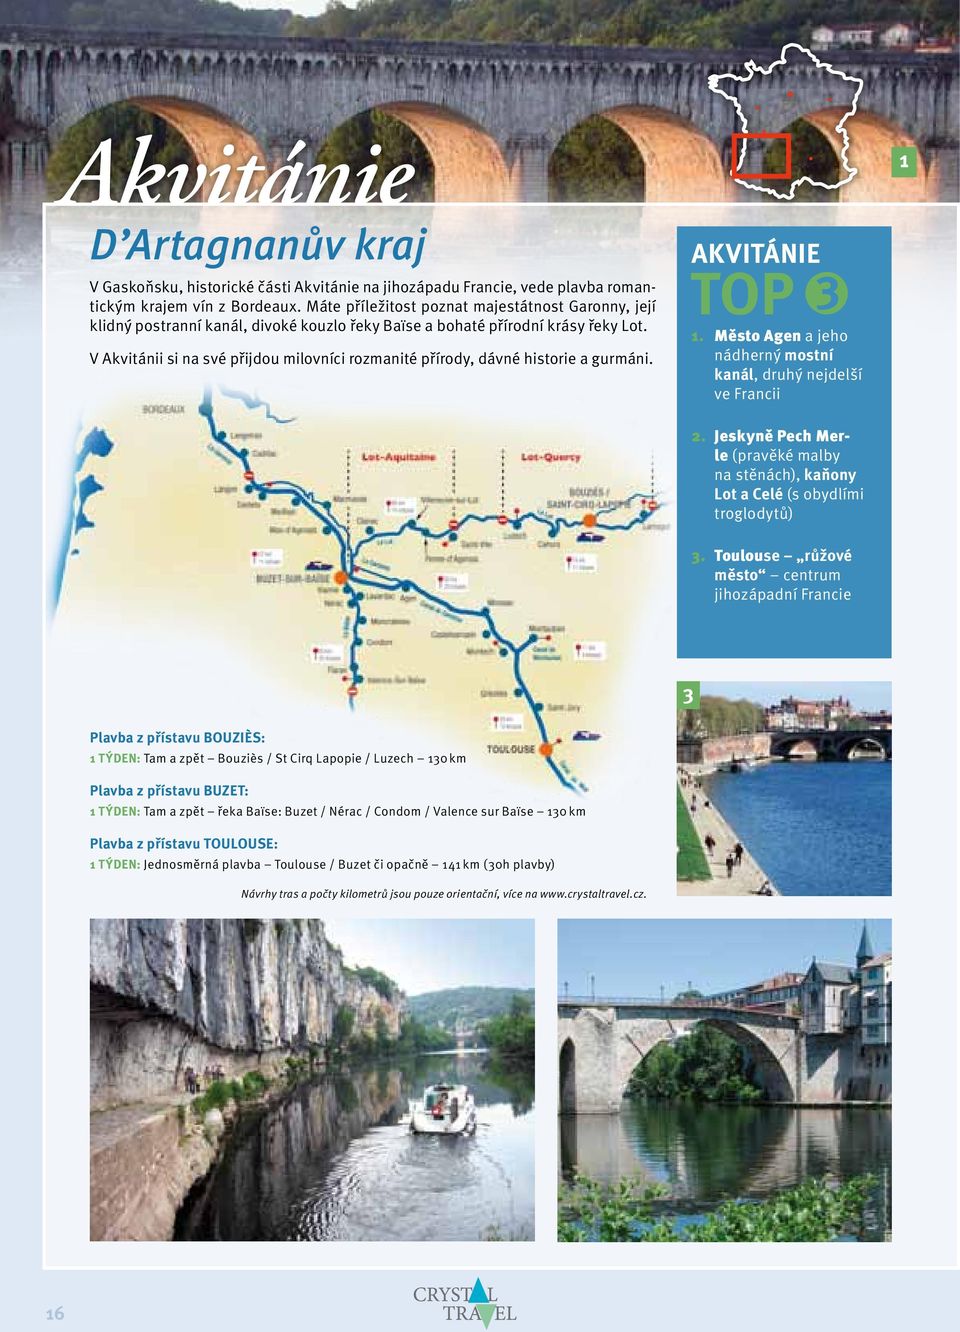 V Akvitánii si na své přijdou milovníci rozmanité přírody, dávné historie a gurmáni. Akvitánie TOP 3 1. Město Agen a jeho nádherný mostní kanál, druhý nejdelší ve Francii 2.